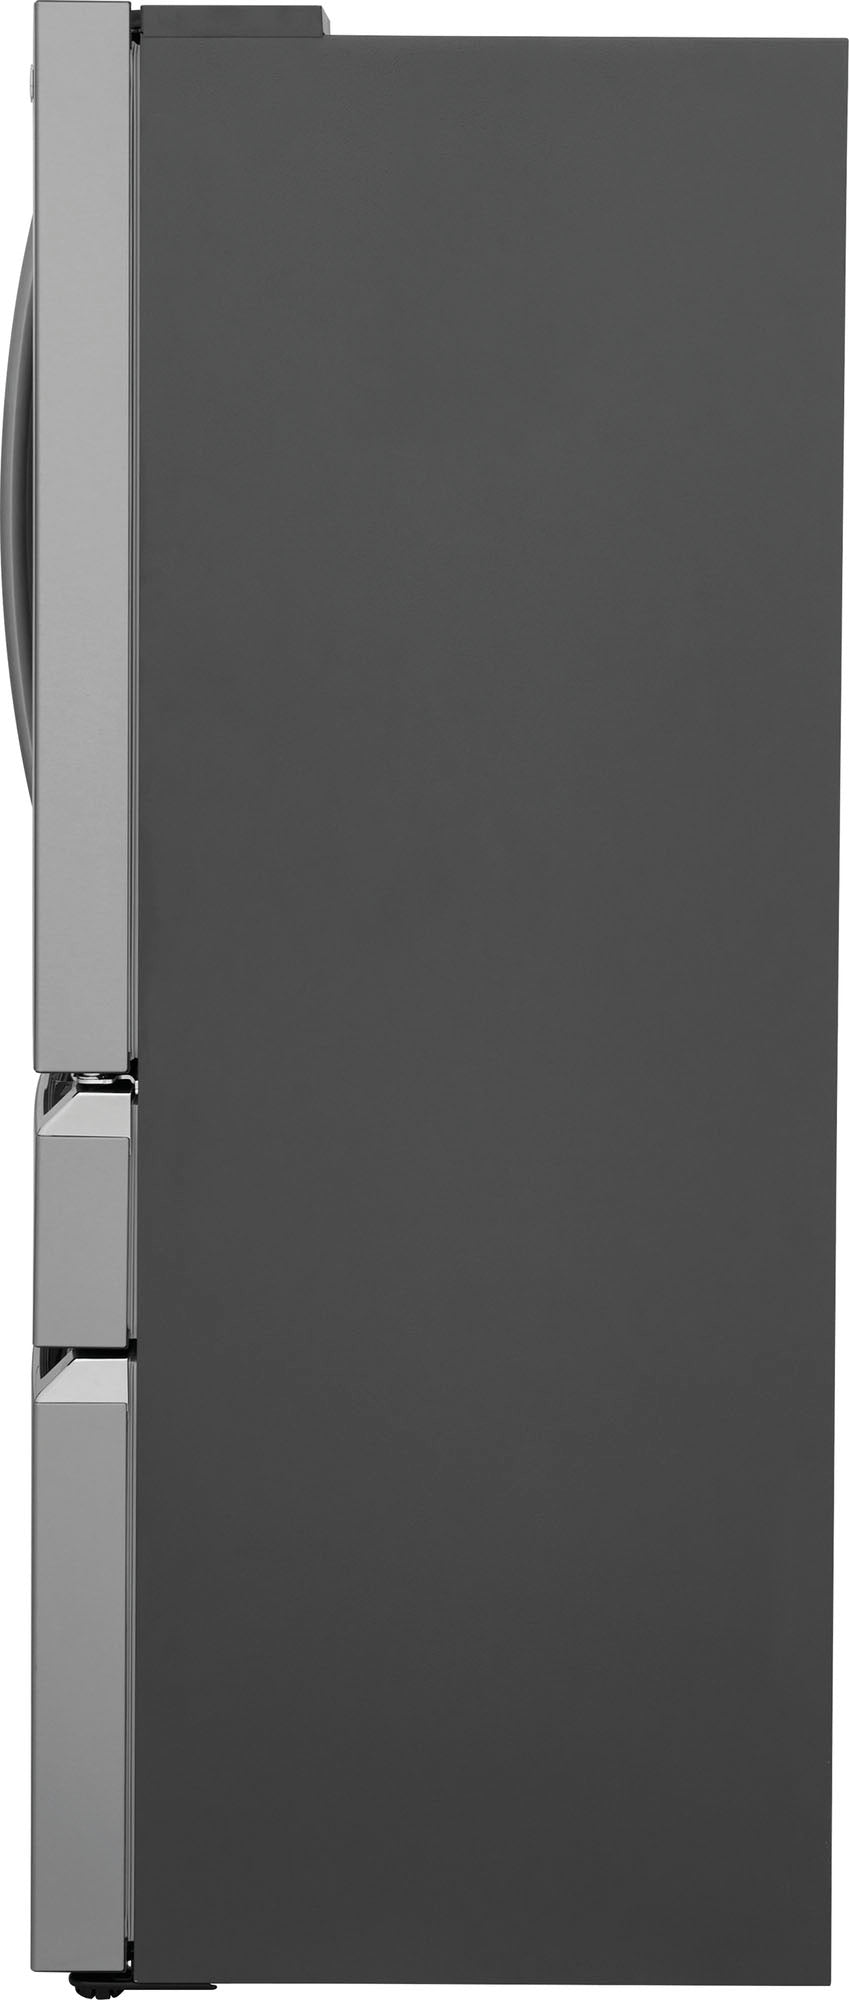 Frigidaire - 21.5 Cu. Ft.  4-Door French Door Counter-Depth Refrigerator - Stainless steel_10